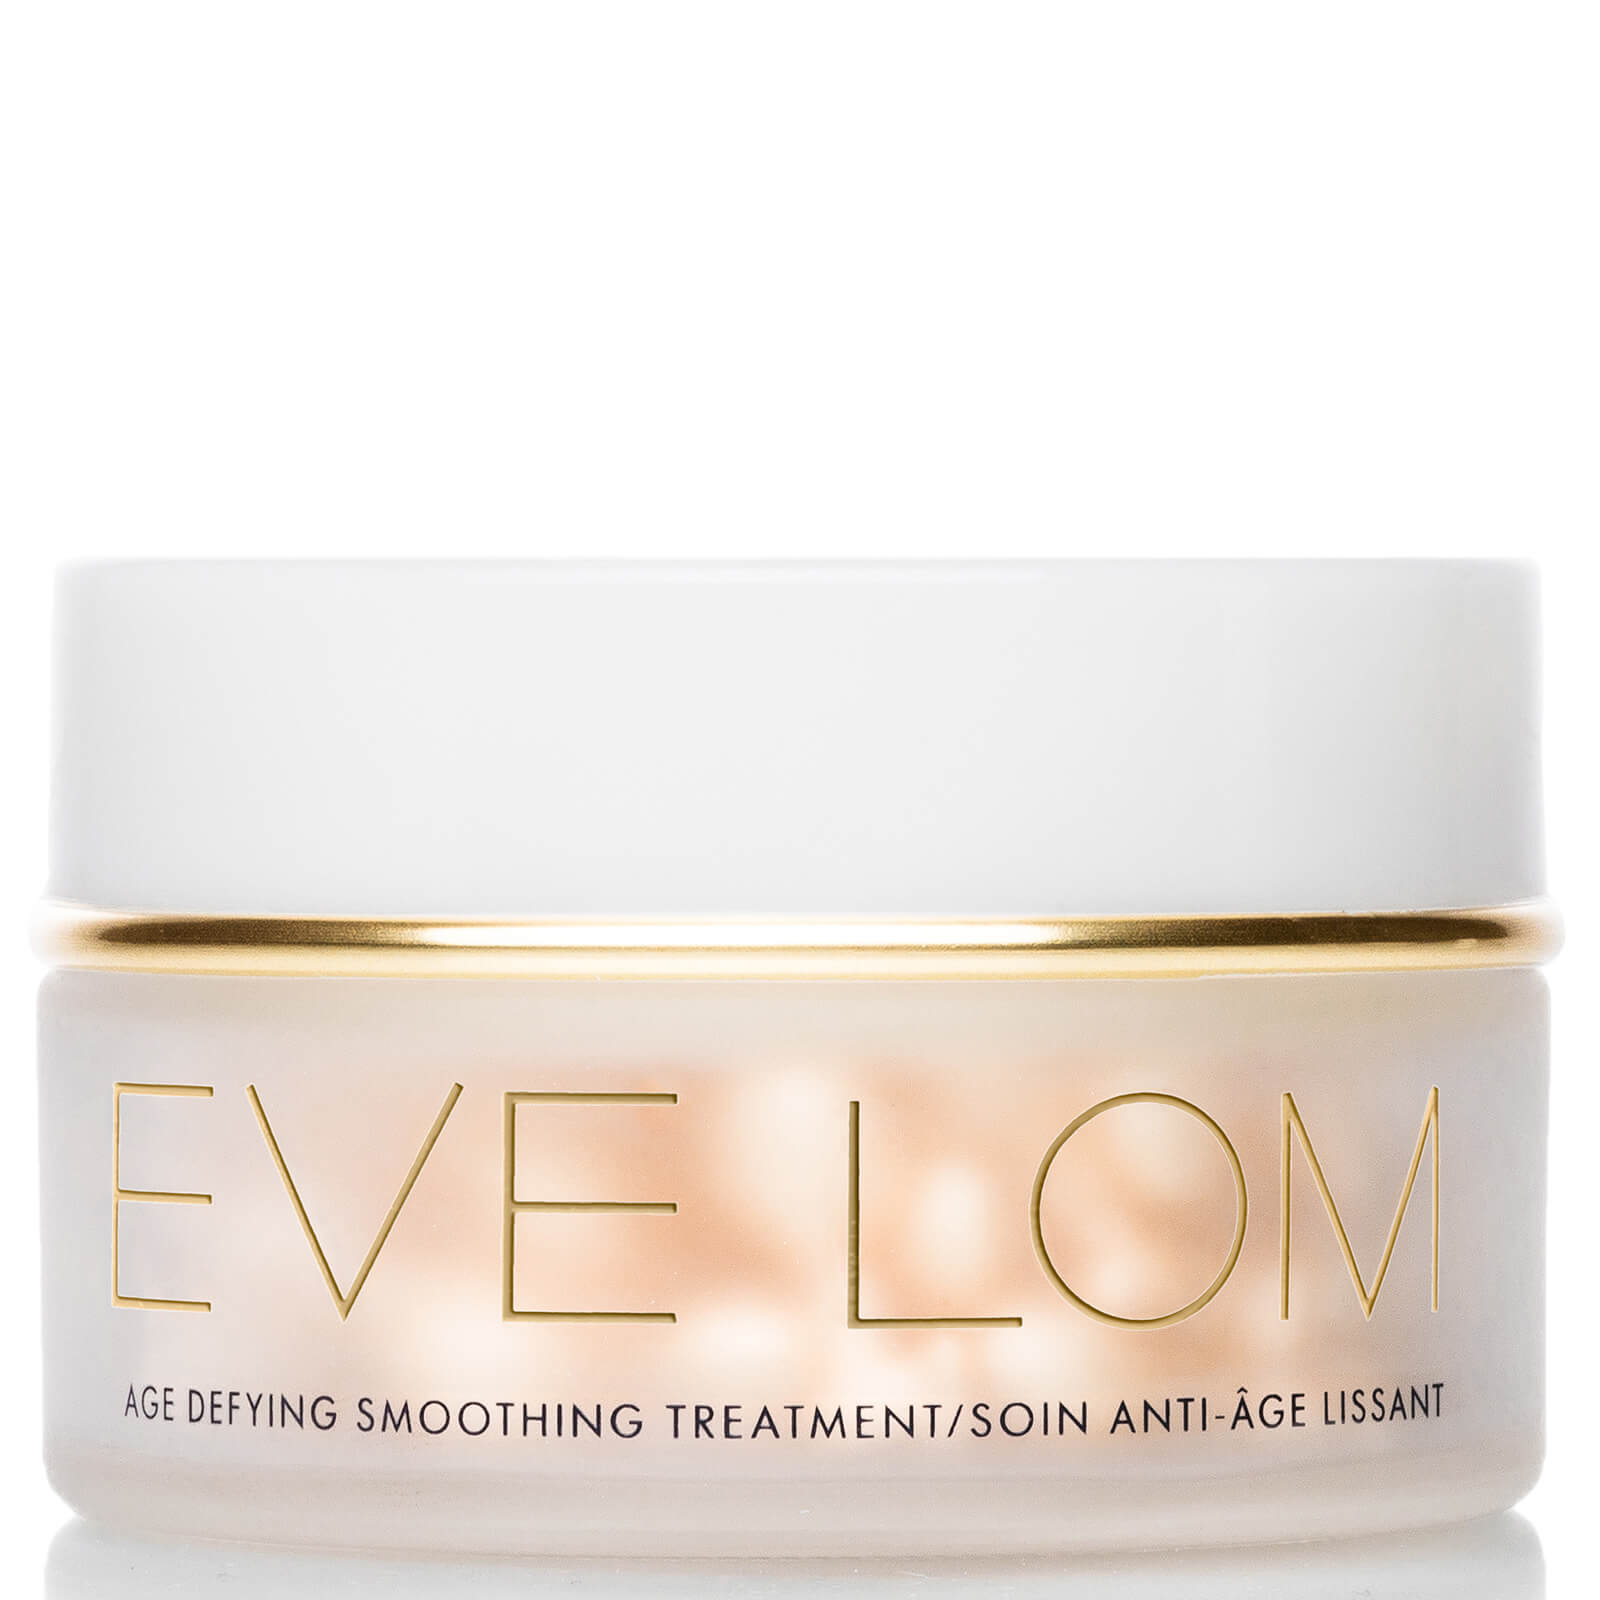 Eve Lom Age Defying Smoothing Treatment (90 capsules)